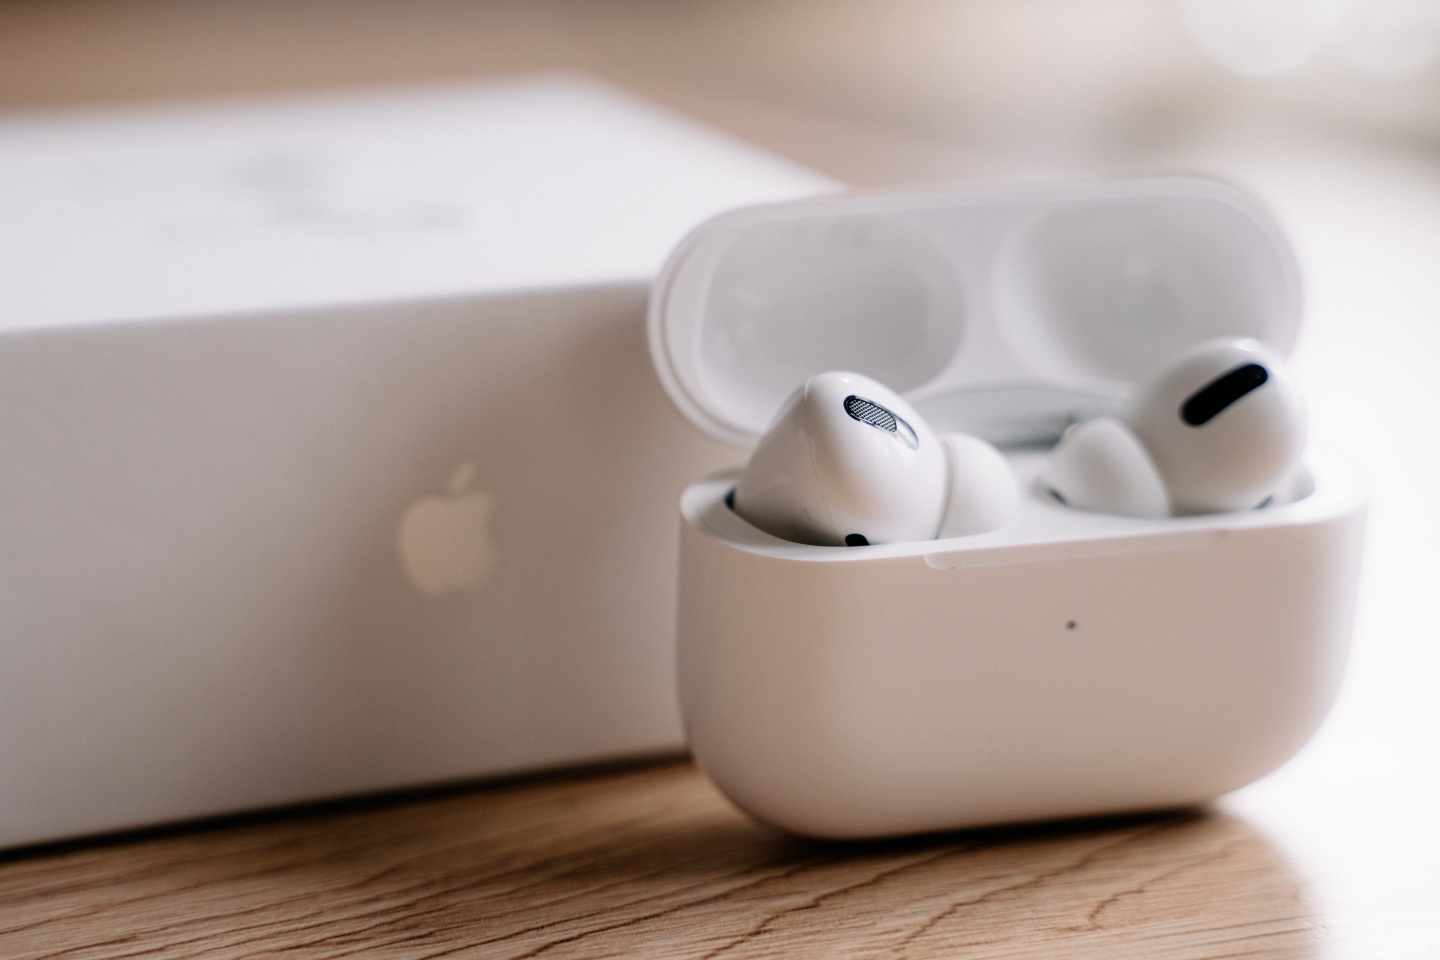 蘋果被控 AirPods 突然發出過大聲的警報通知 導致男童聽力受損